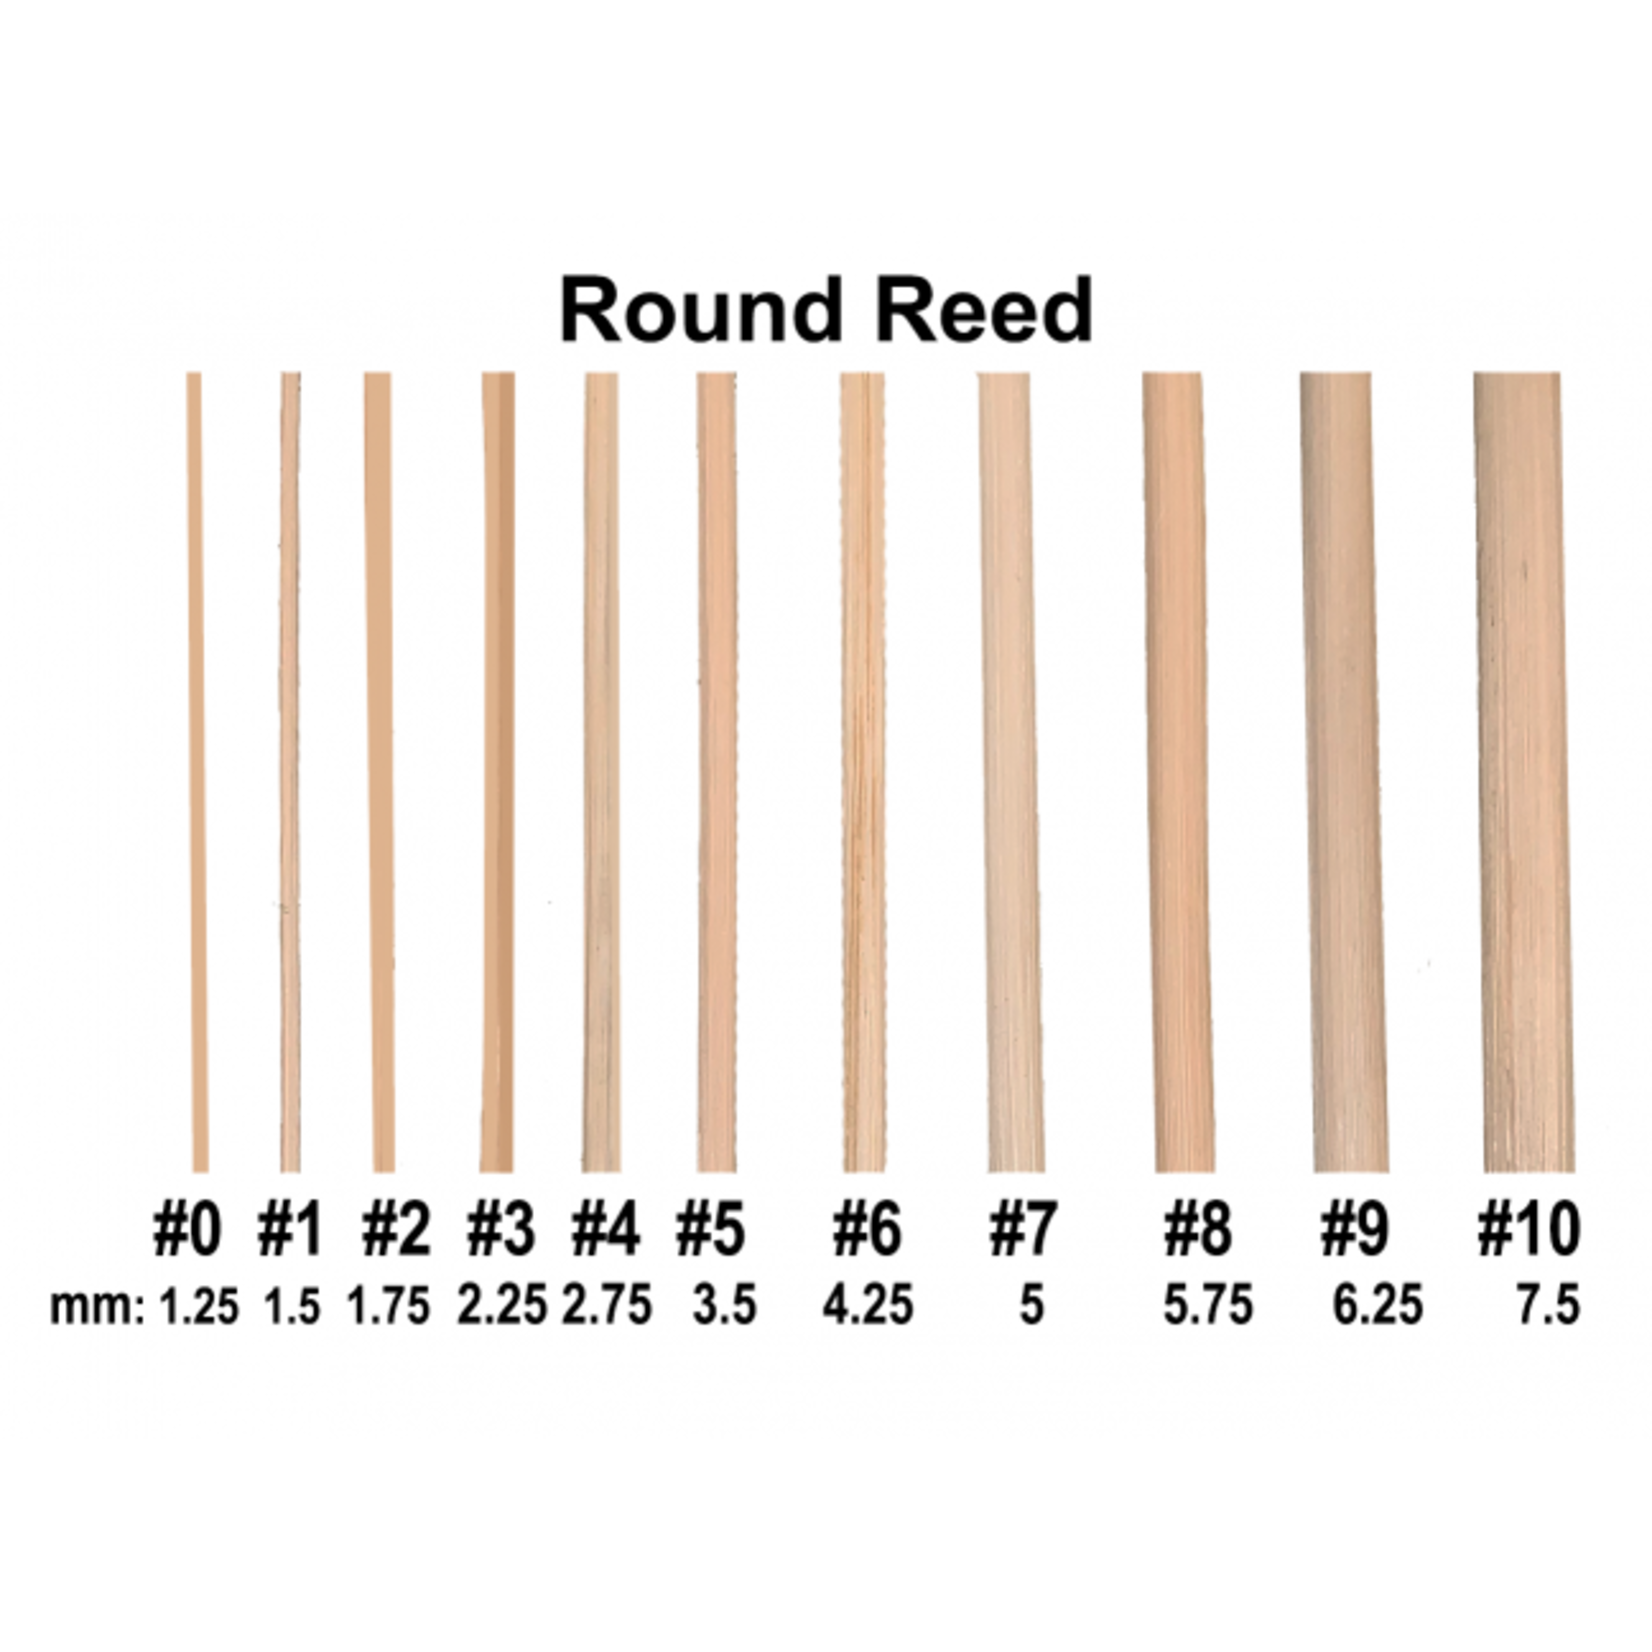 Royalwood, Ltd Round Reed Size #2